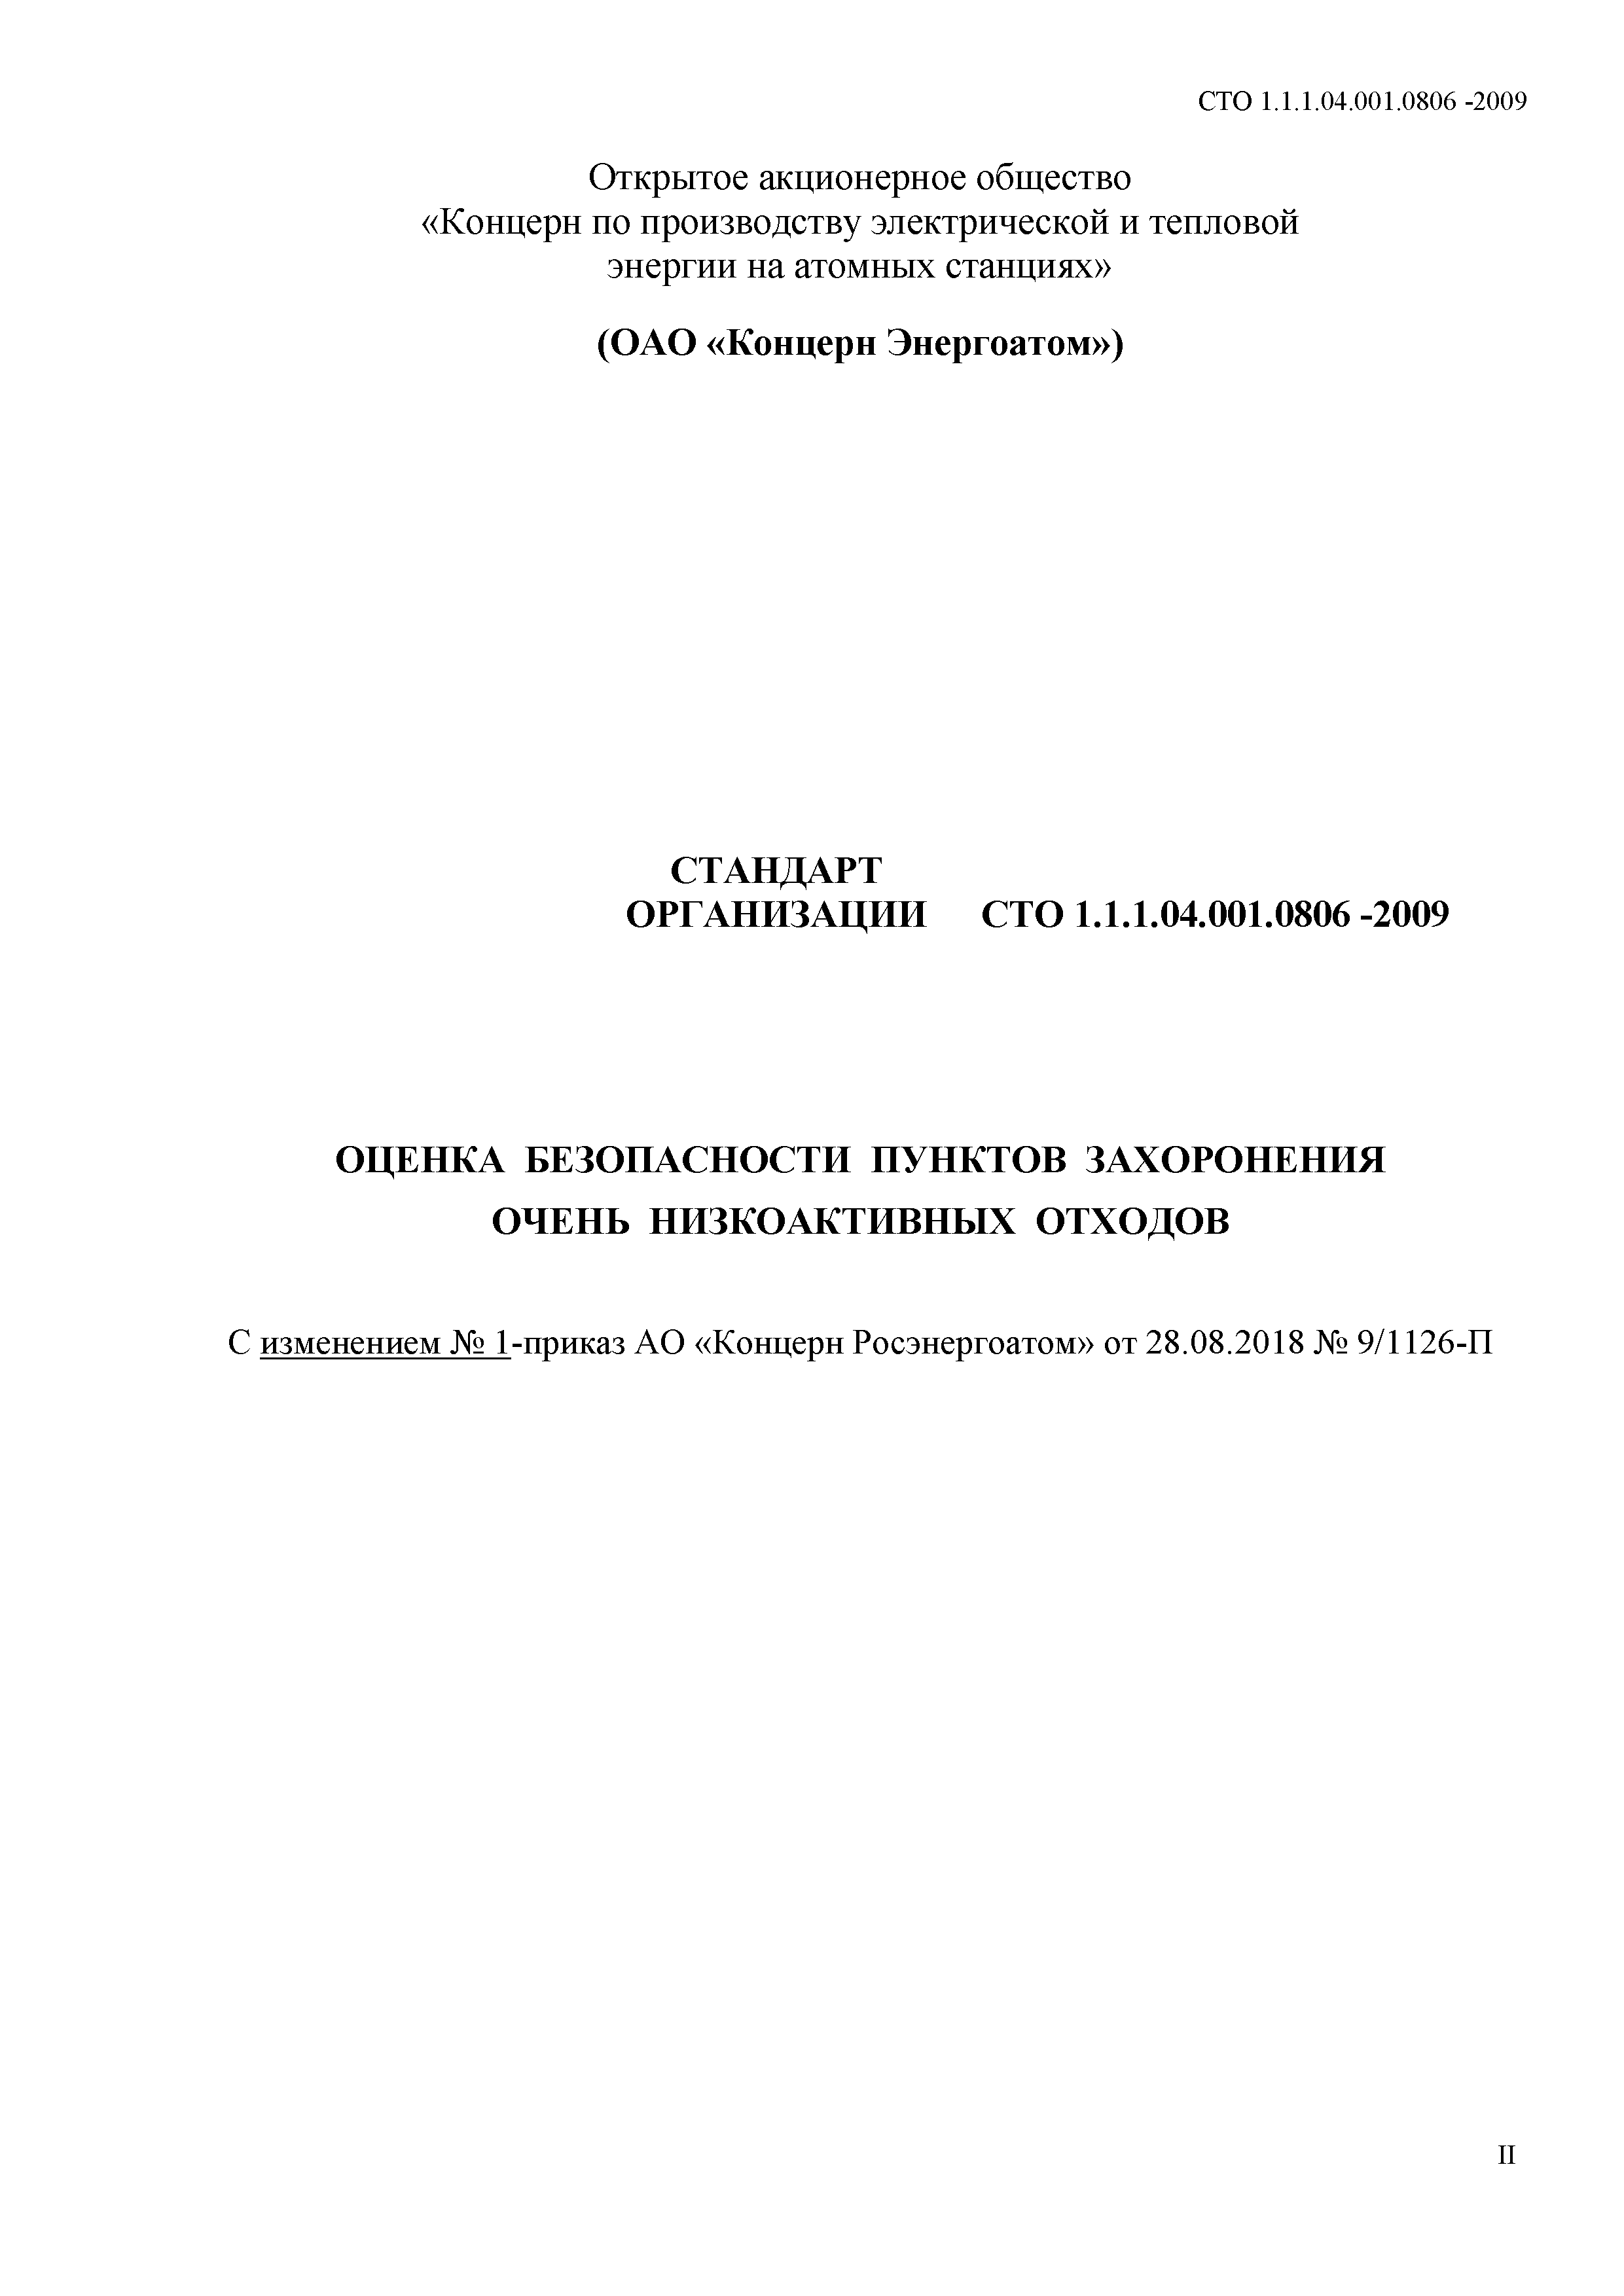 СТО 1.1.1.04.001.0806-2009